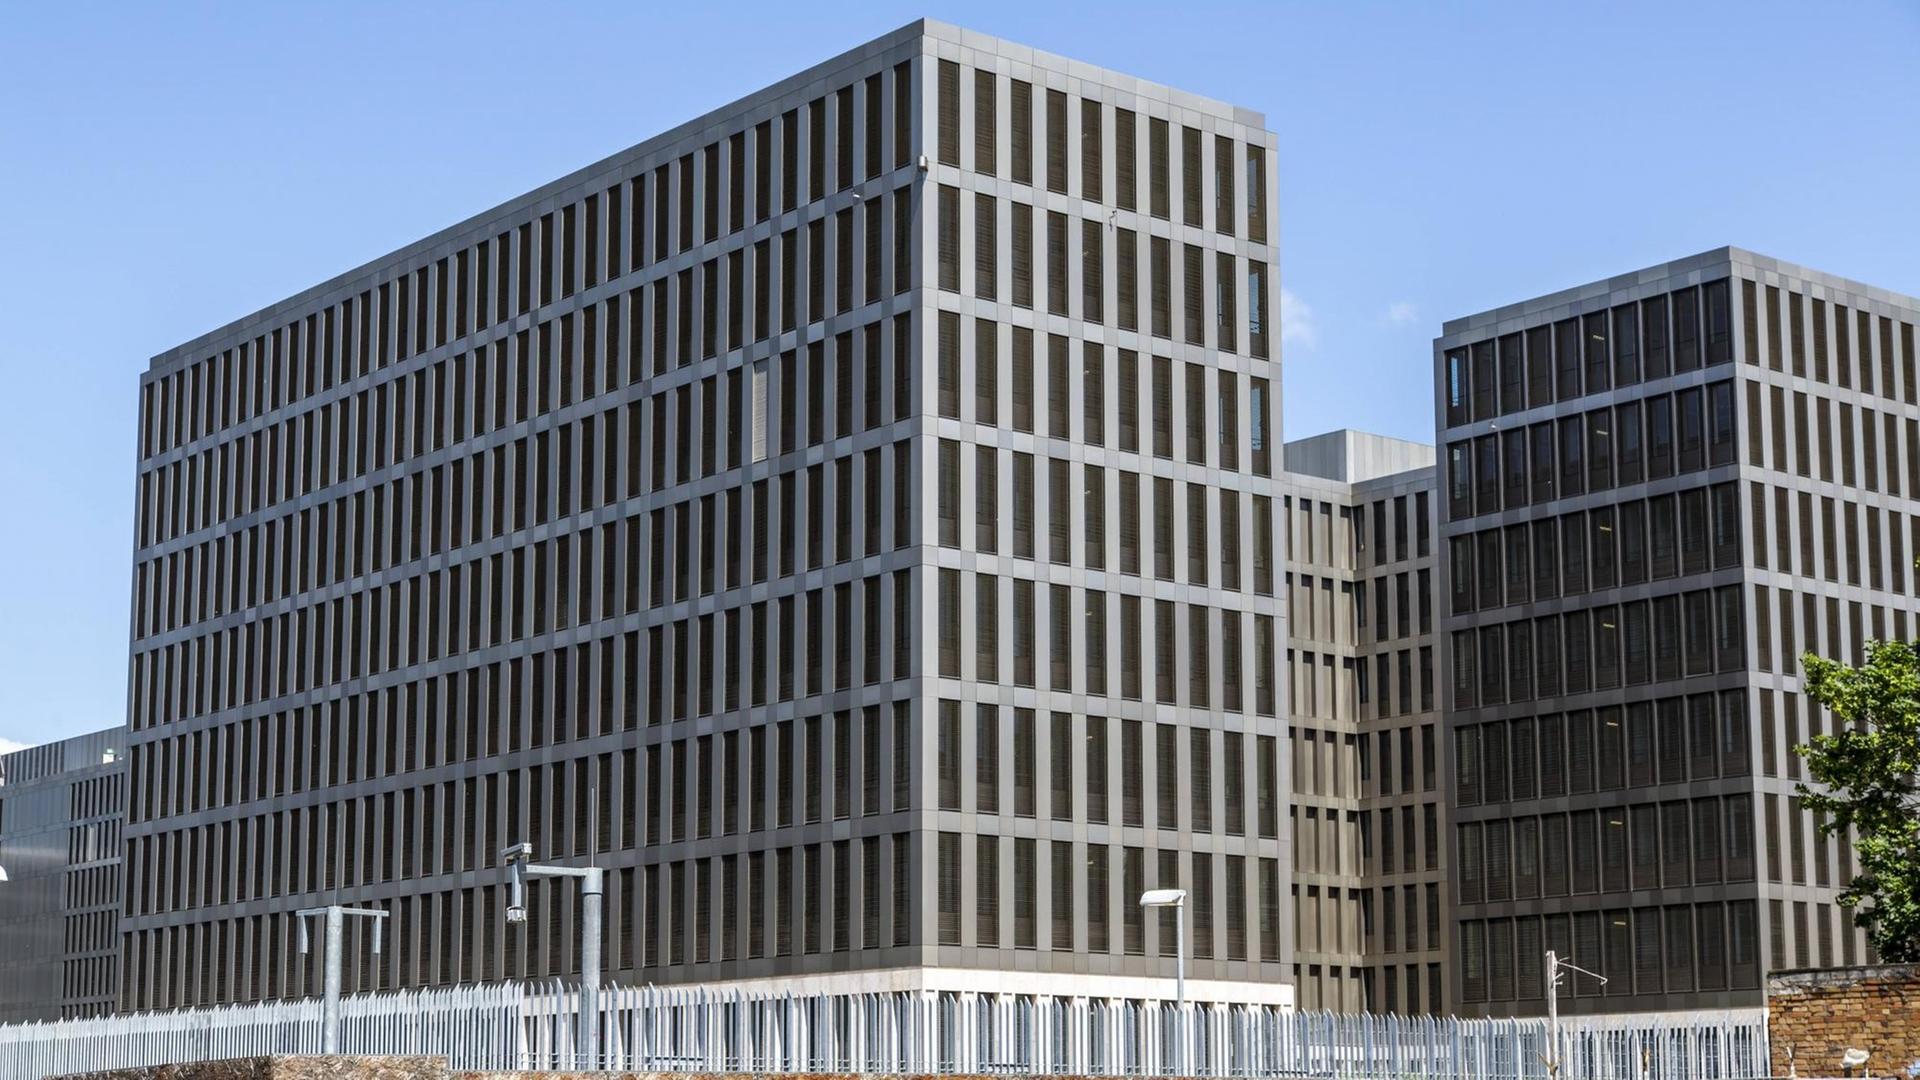 Neubau der Zentrale des Bundesnachrichtendienstes in Berlin